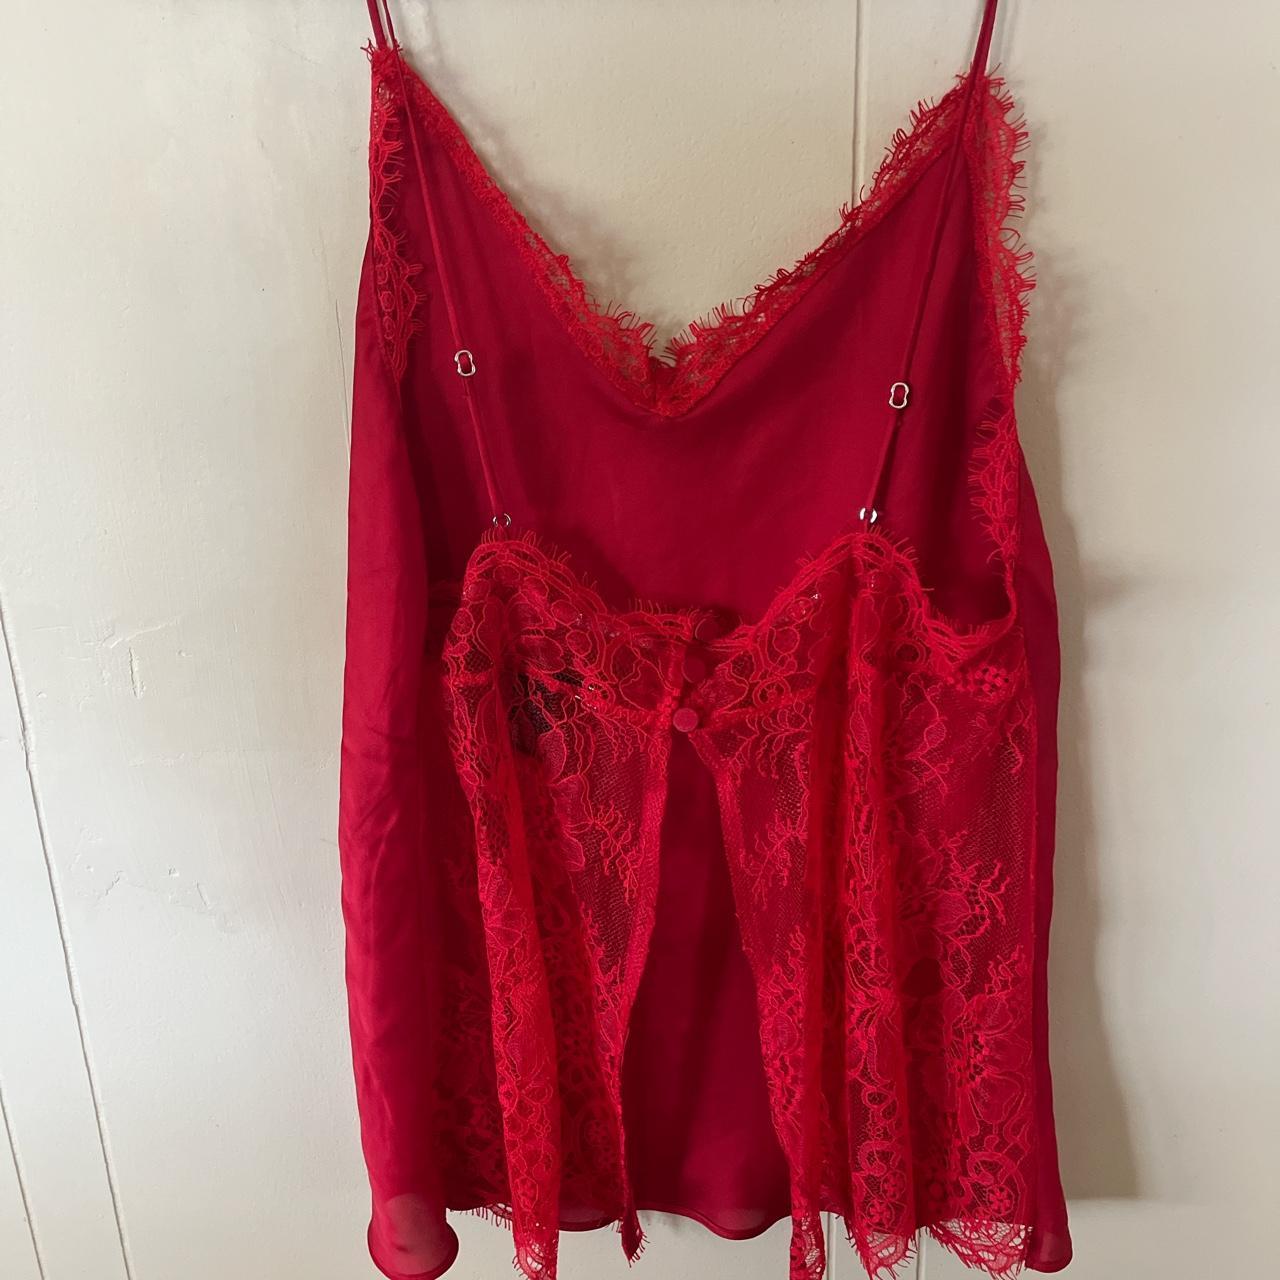 Victoria's Secret Women's Red Nightwear | Depop